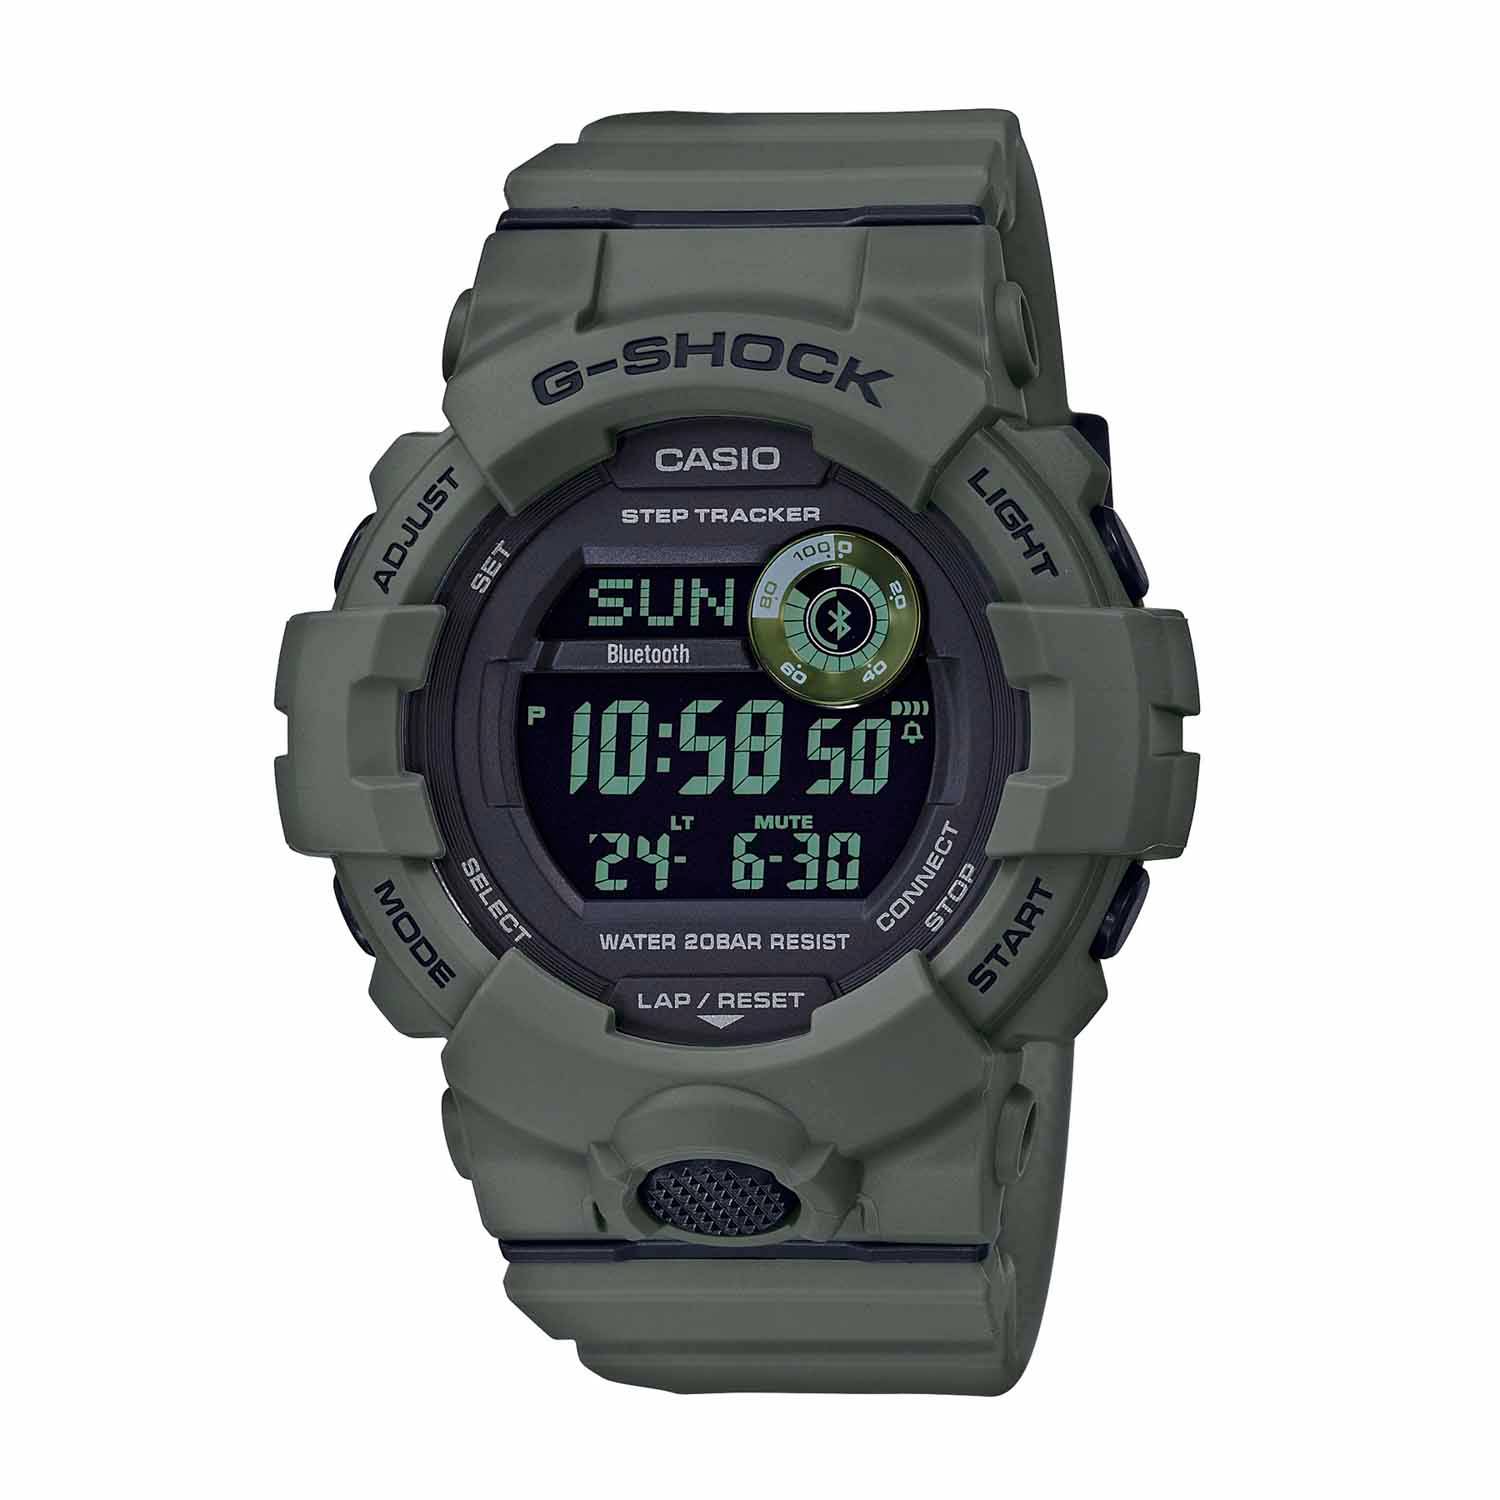 Casio G-Shock Watch (Olive Drab Green) - GBD800UC-3